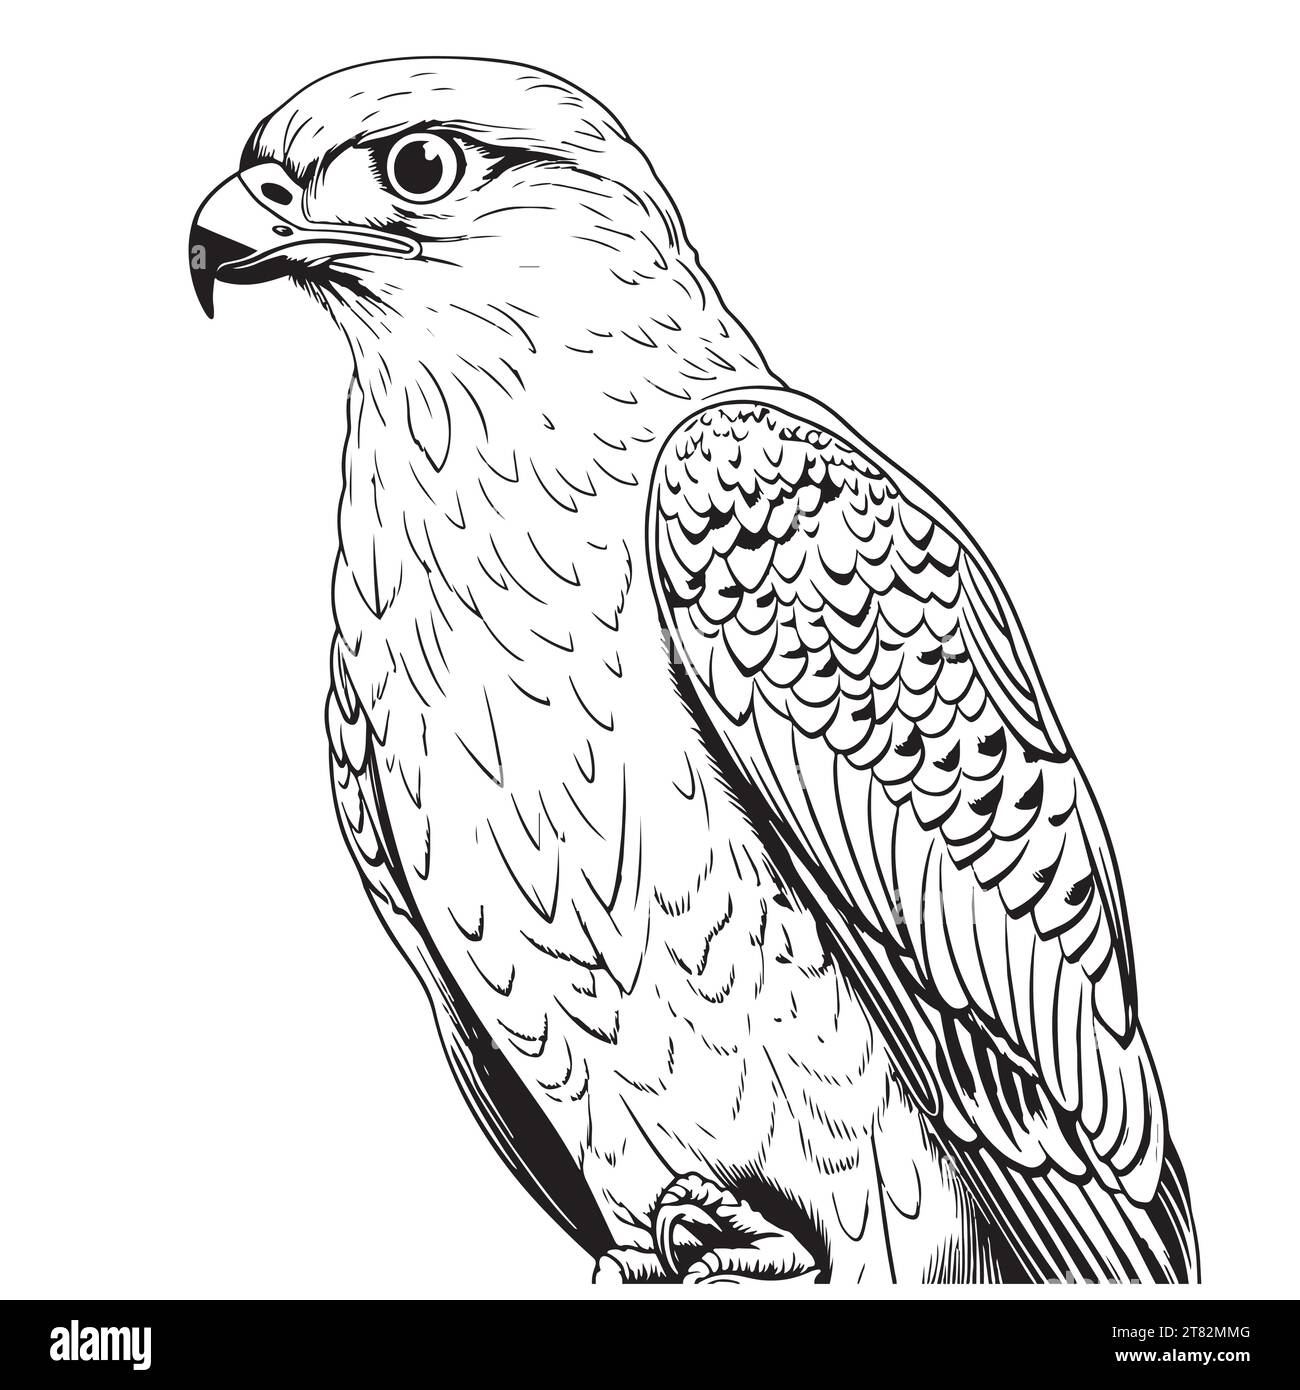 Bird of prey species Stock Vector Images - Alamy